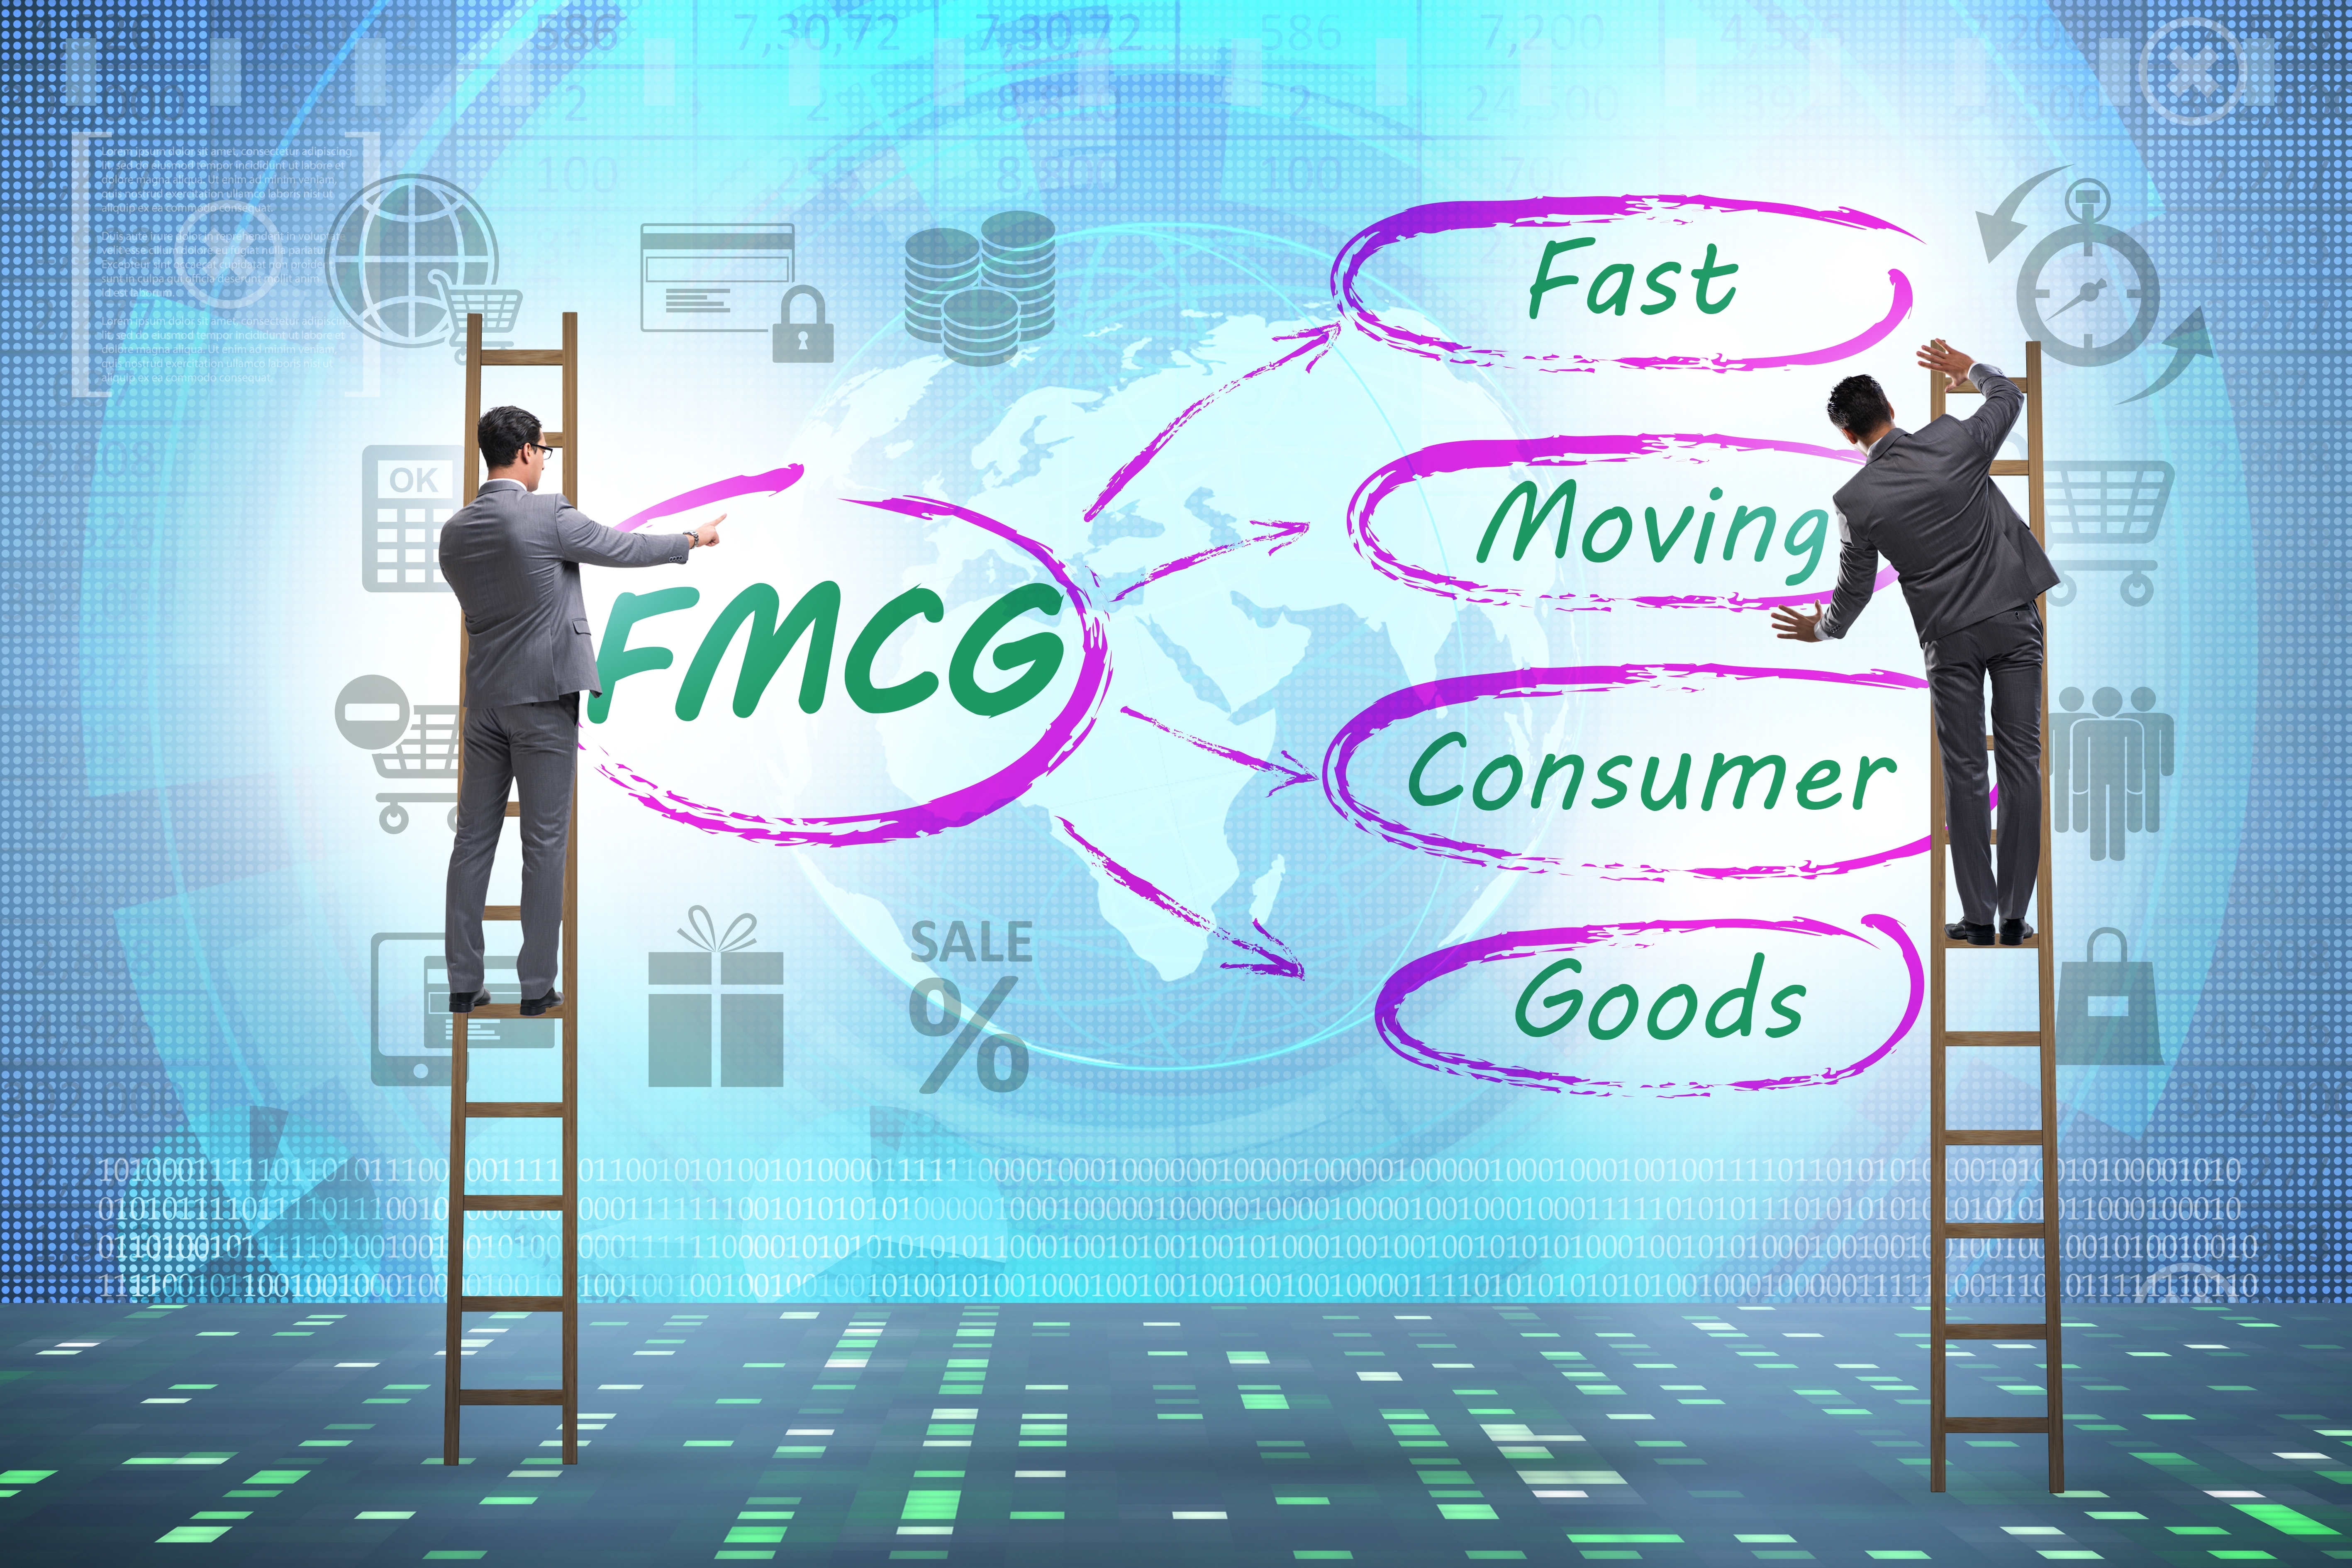 Xu hướng nào hiện nay lên ngôi trong ngành FMCG?